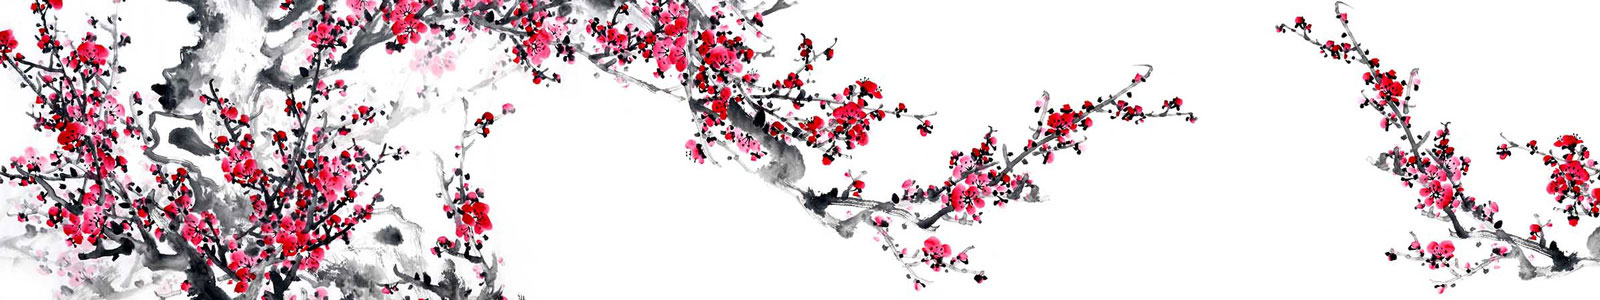 №3233 - Цветение сливы, китайская живопись